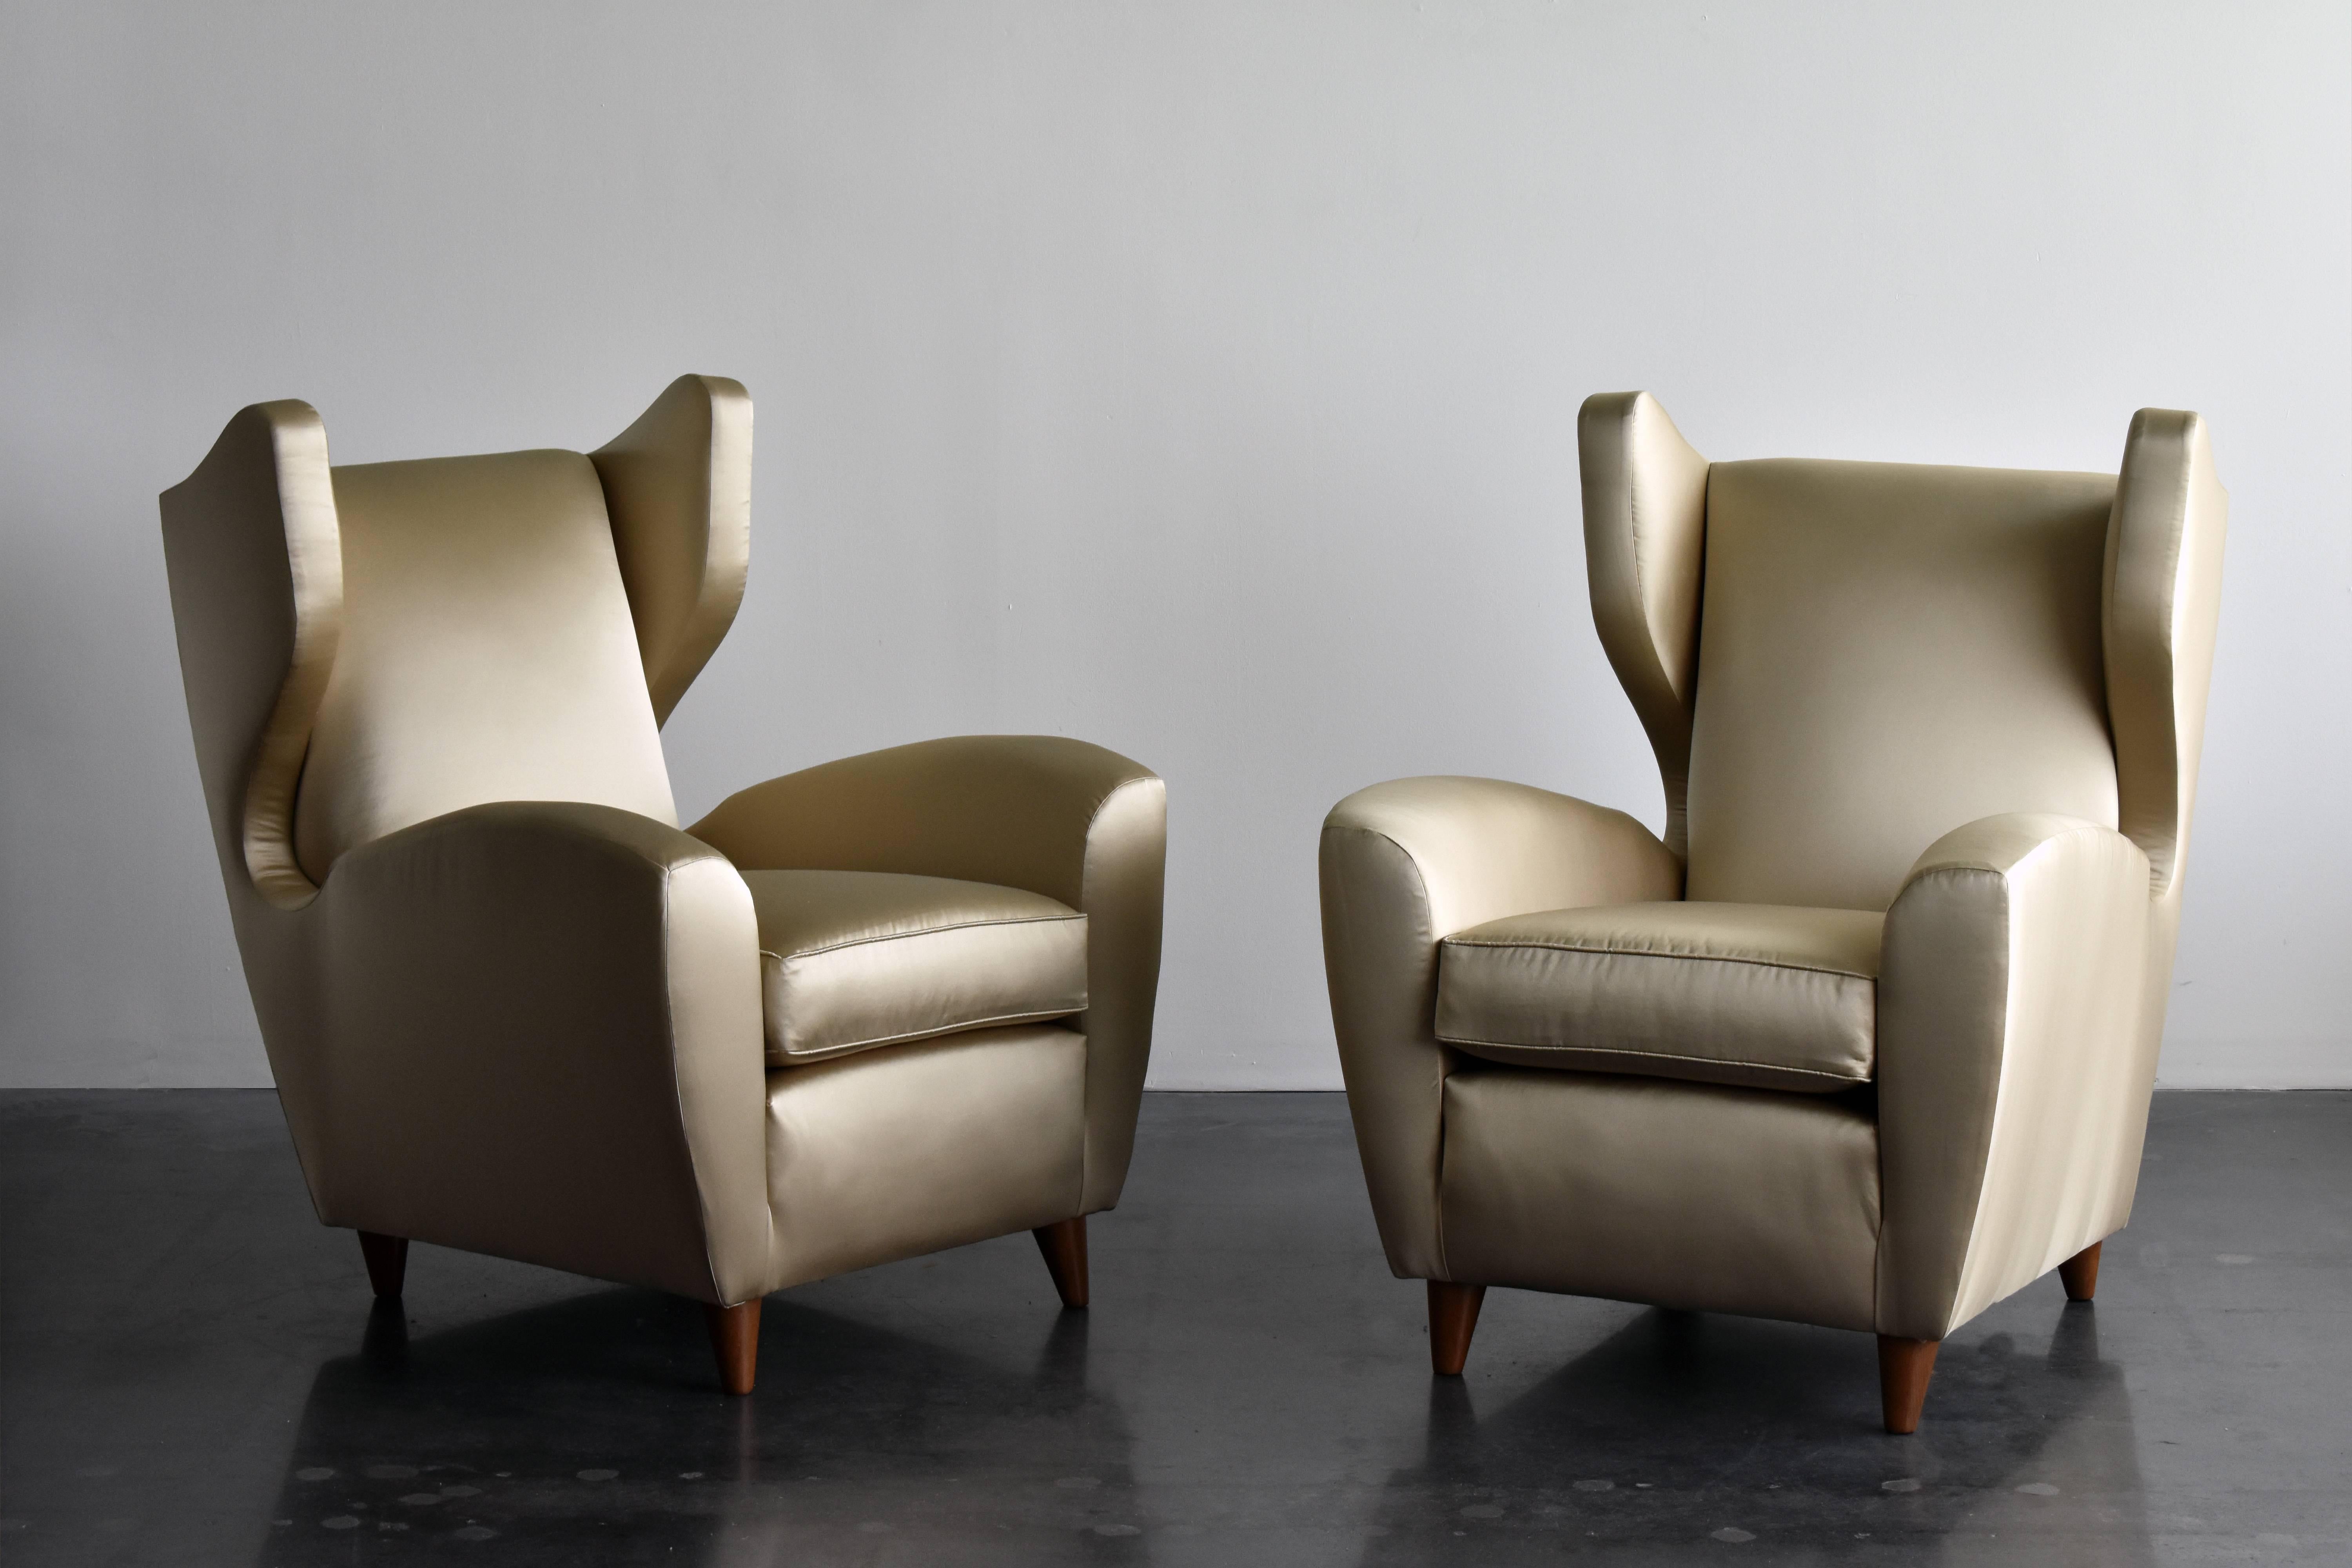 Ein Paar organische Lounge-/Wingback-/Hochlehner-Stühle, entworfen und hergestellt vom italienischen Architekten Melchiorre BEGA. Holzbeine, gepolstert mit brandneuem hellgoldenem/bronzefarbenem Metallic-Satin-Stoff. 

Melchiorre BEGA gilt als einer